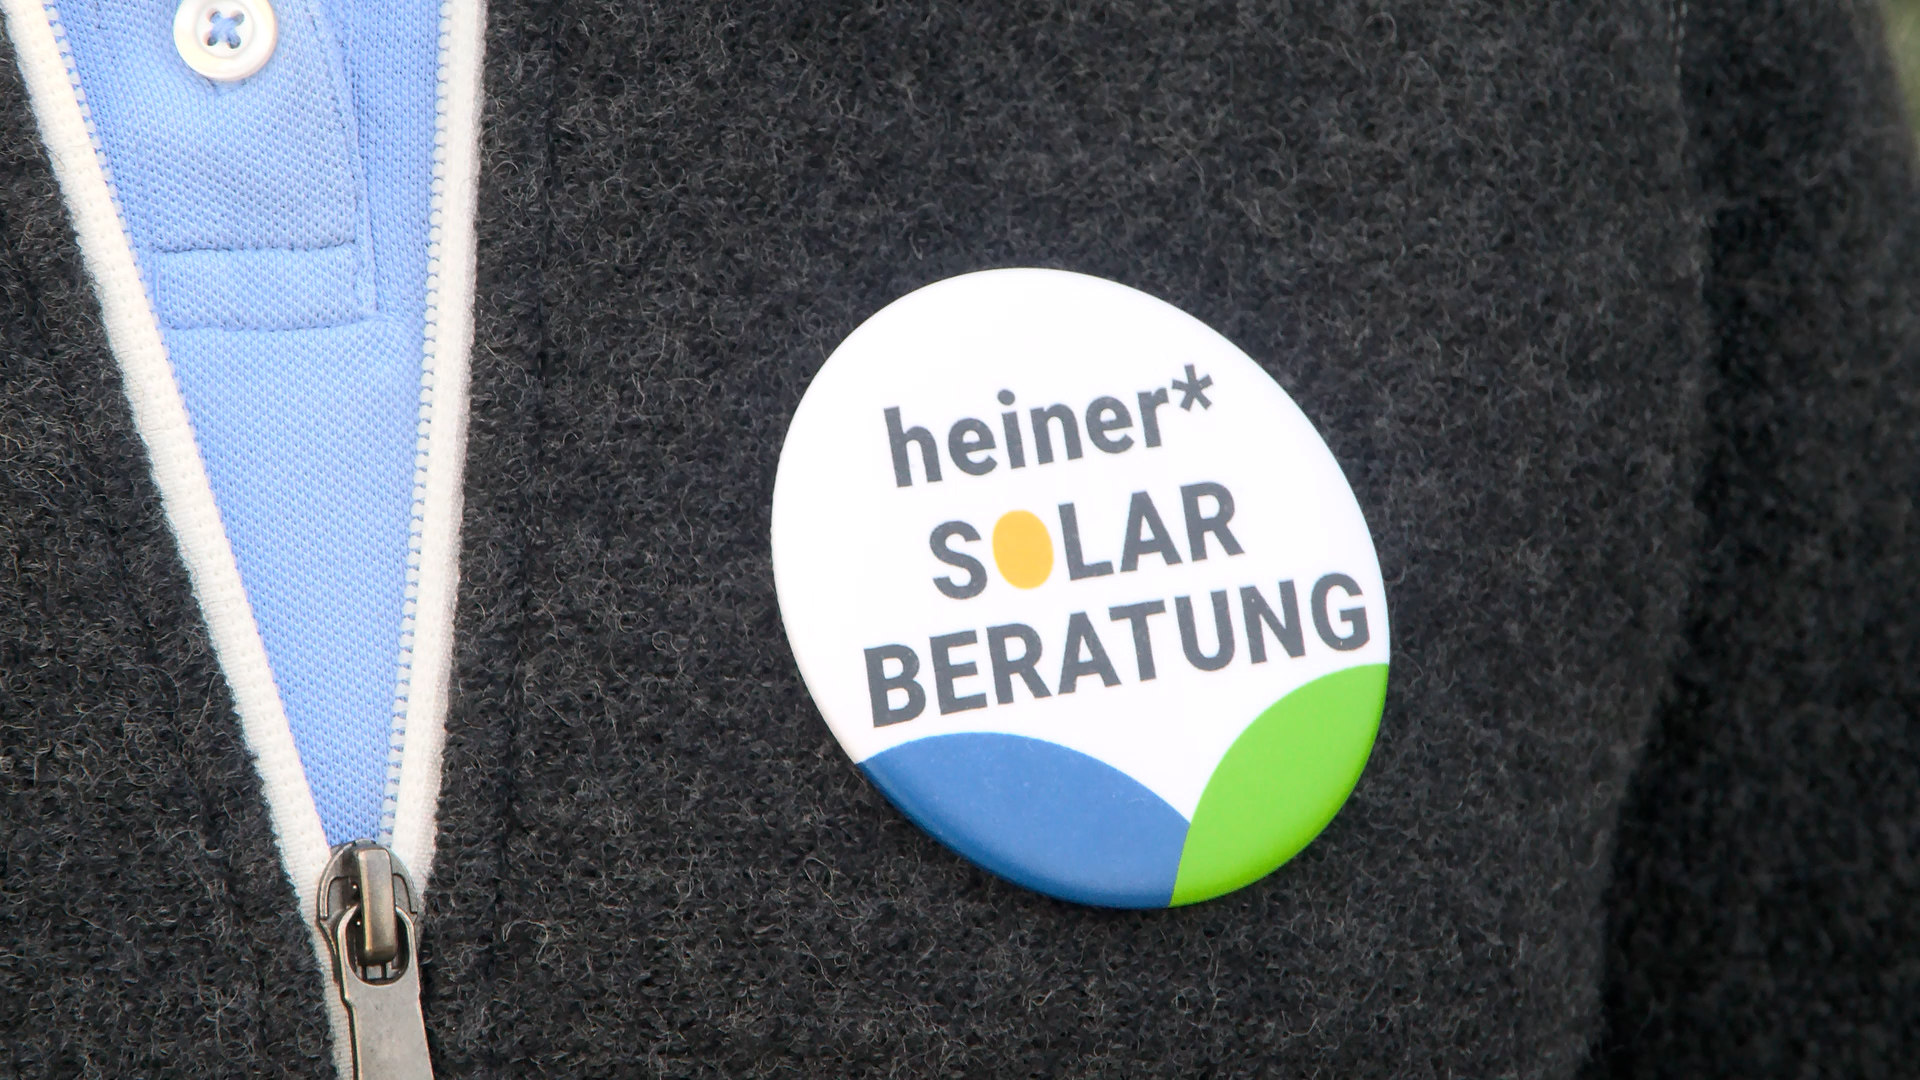 heiner*solarberatung: Darmstadts Unterstützung auf dem Weg zur eigenen Solaranlage